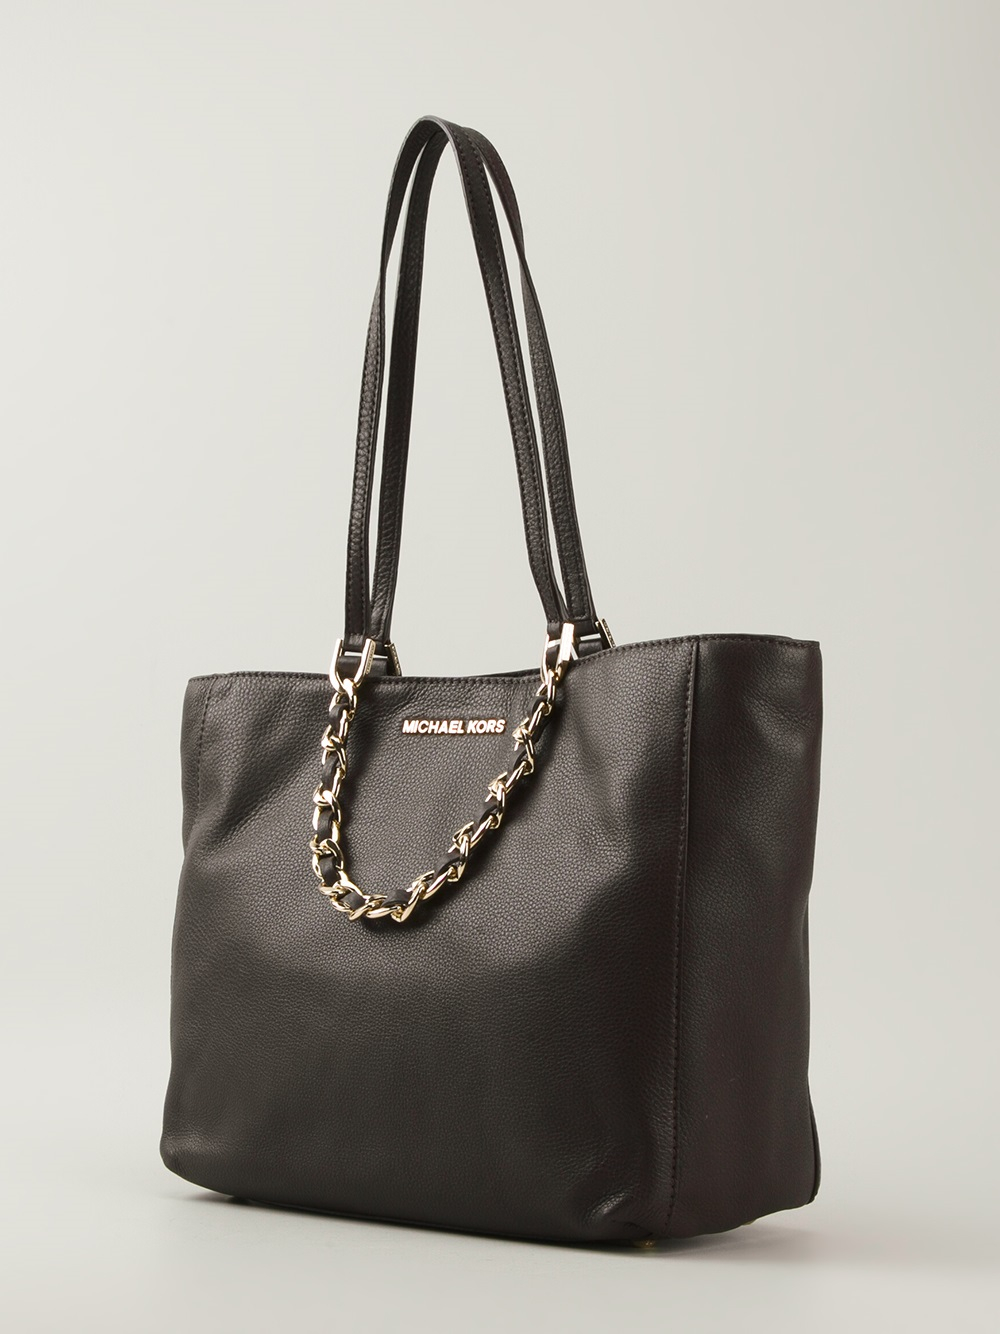 michael kors bag with chain handles